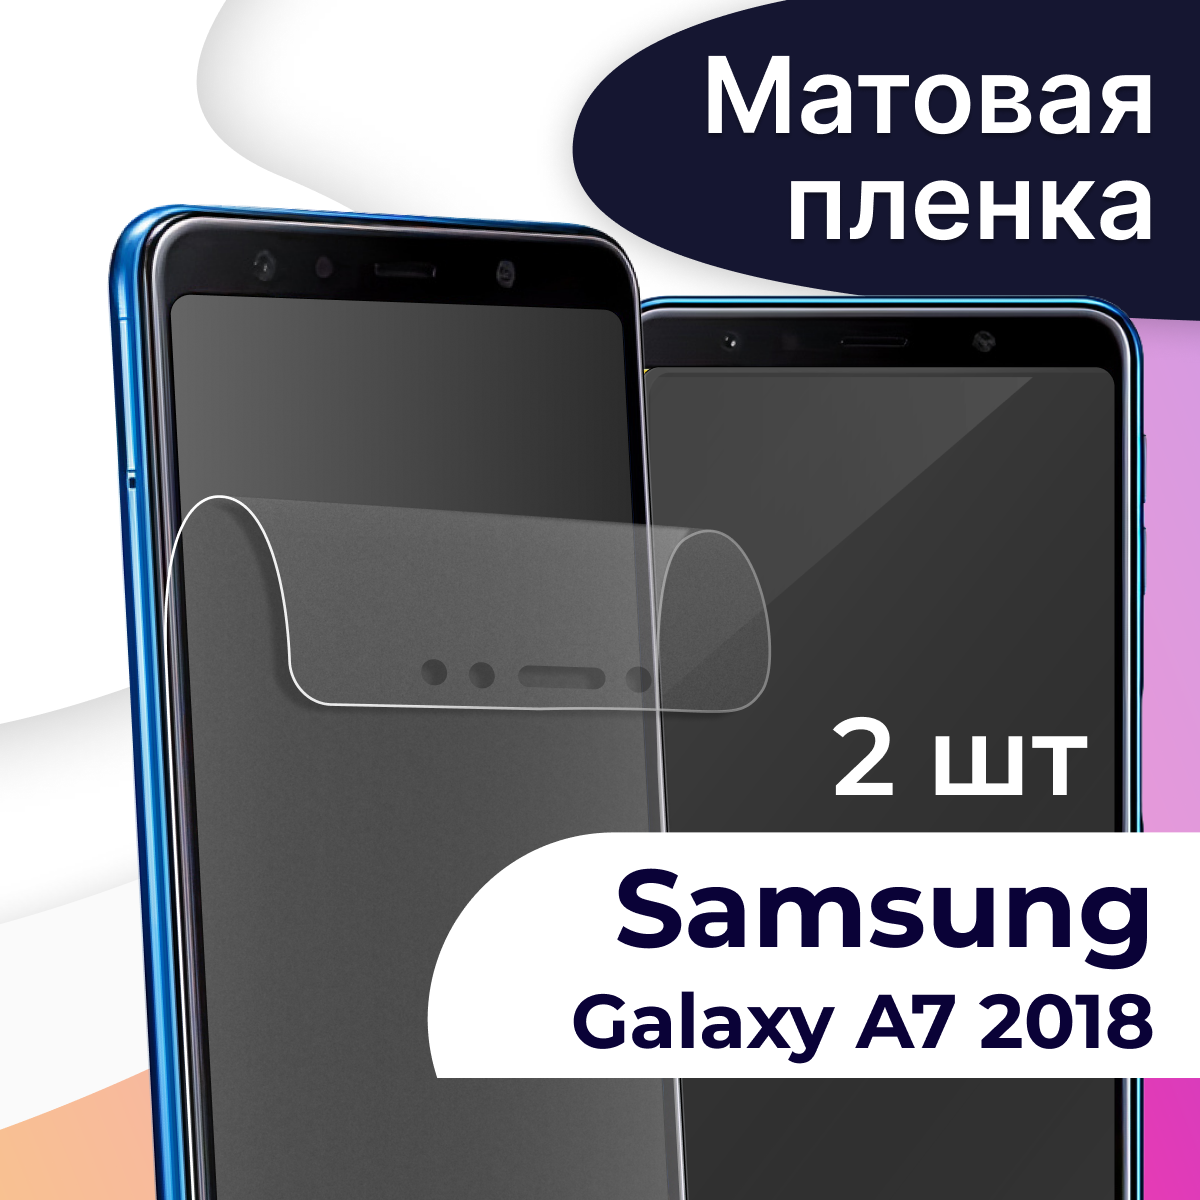 Комплект 2 шт. Матовая пленка на телефон Samsung Galaxy A7 2018 / Гидрогелевая противоударная пленка для Самсунг Галакси А7 2018 / Защитная пленка